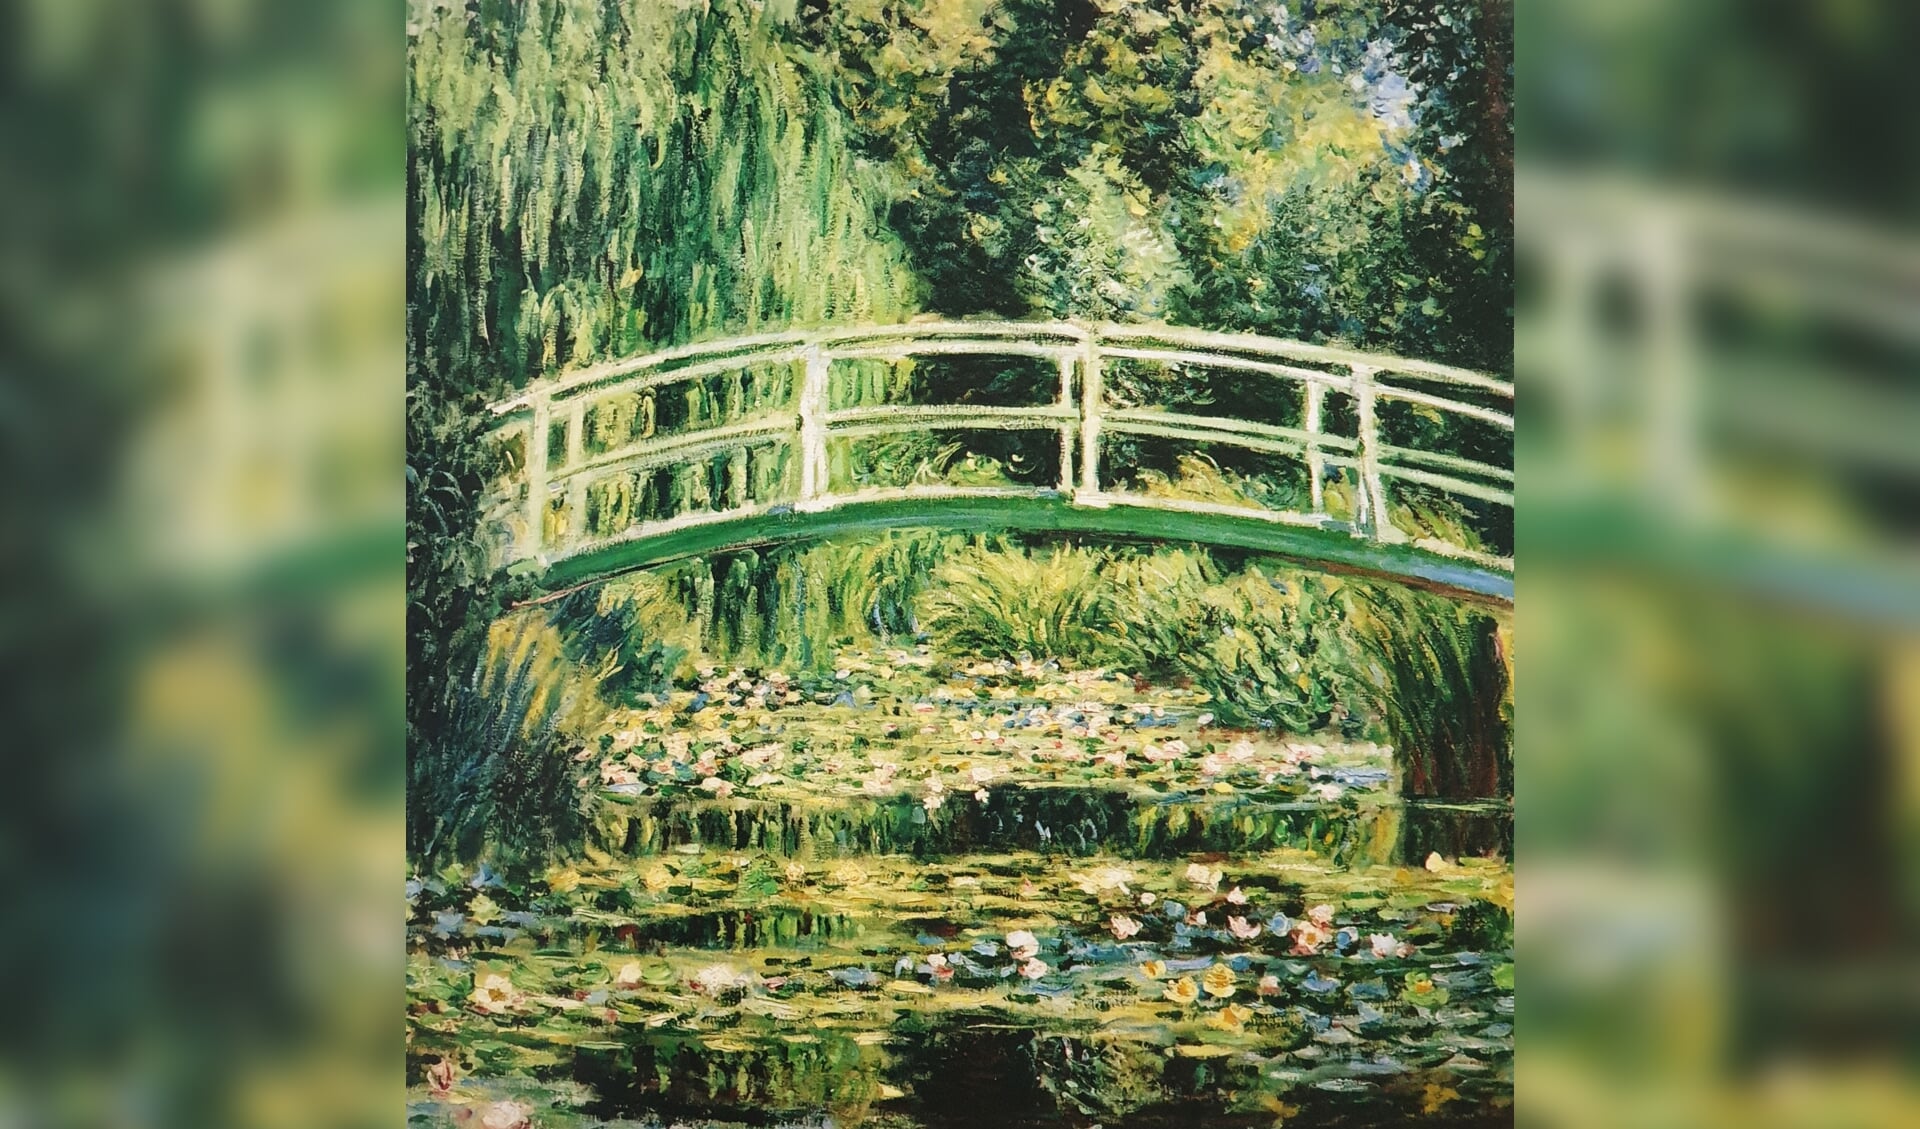 De lezing gaat over het werk van de 19e-eeuwse schilder Claude Monet.(foto: pr)